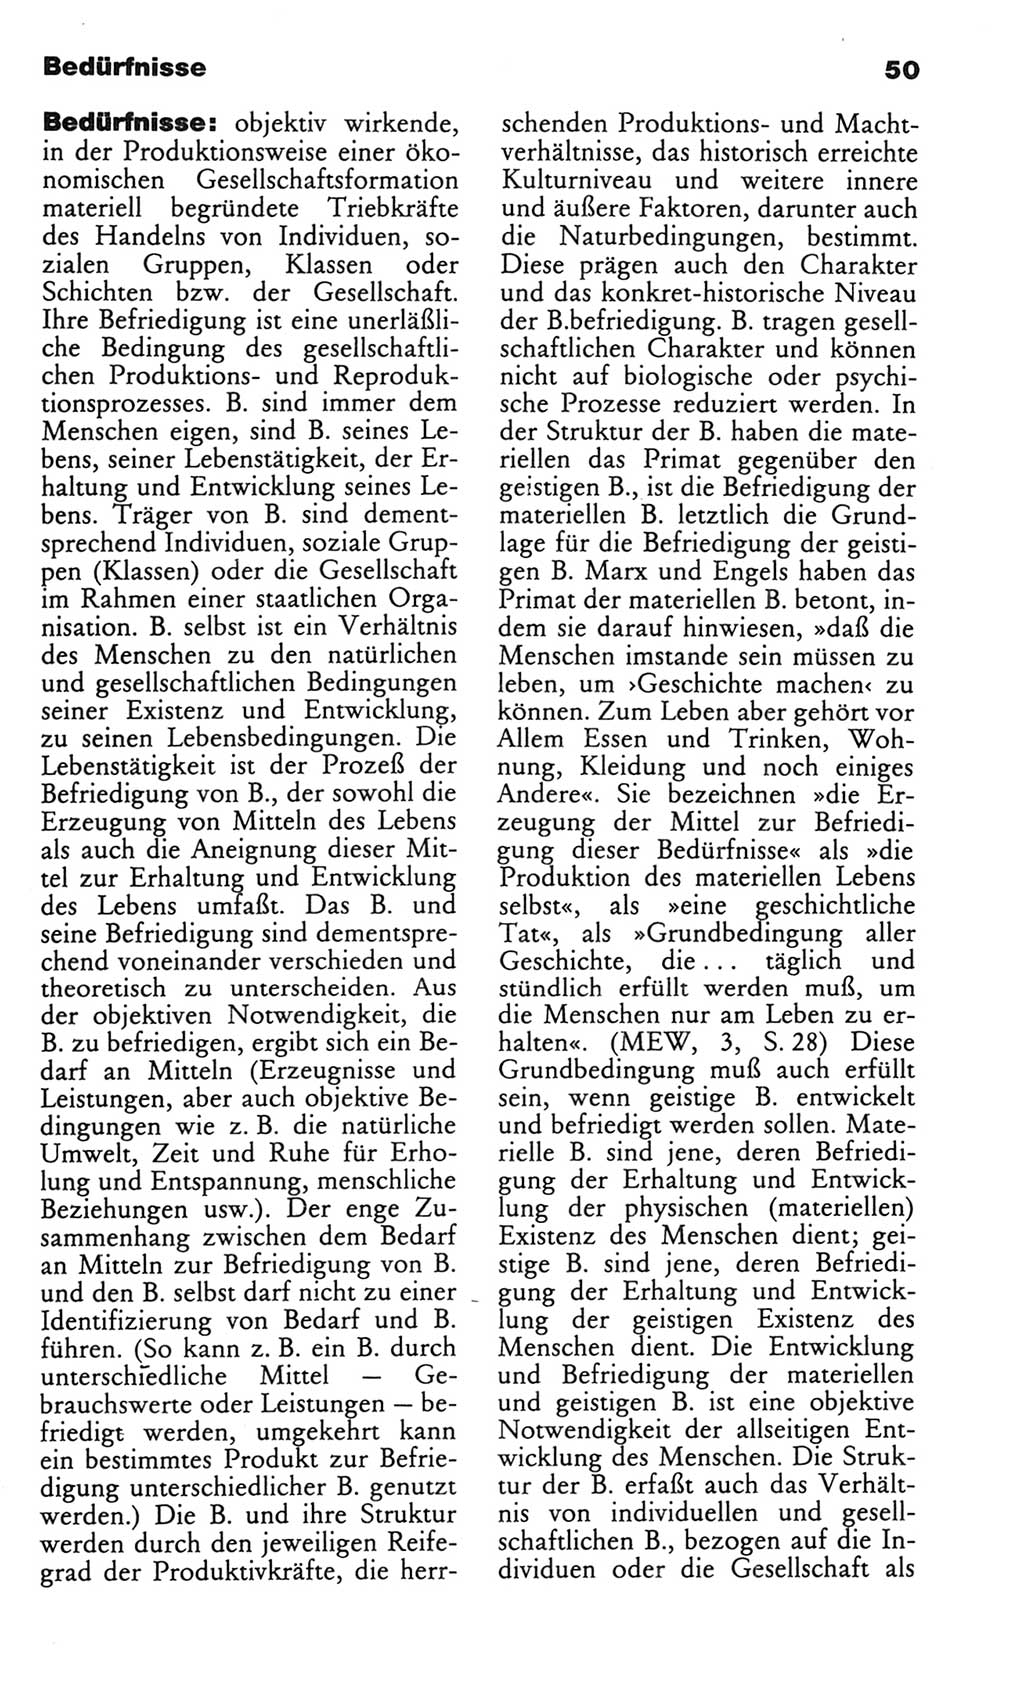 Wörterbuch des wissenschaftlichen Kommunismus [Deutsche Demokratische Republik (DDR)] 1982, Seite 50 (Wb. wiss. Komm. DDR 1982, S. 50)